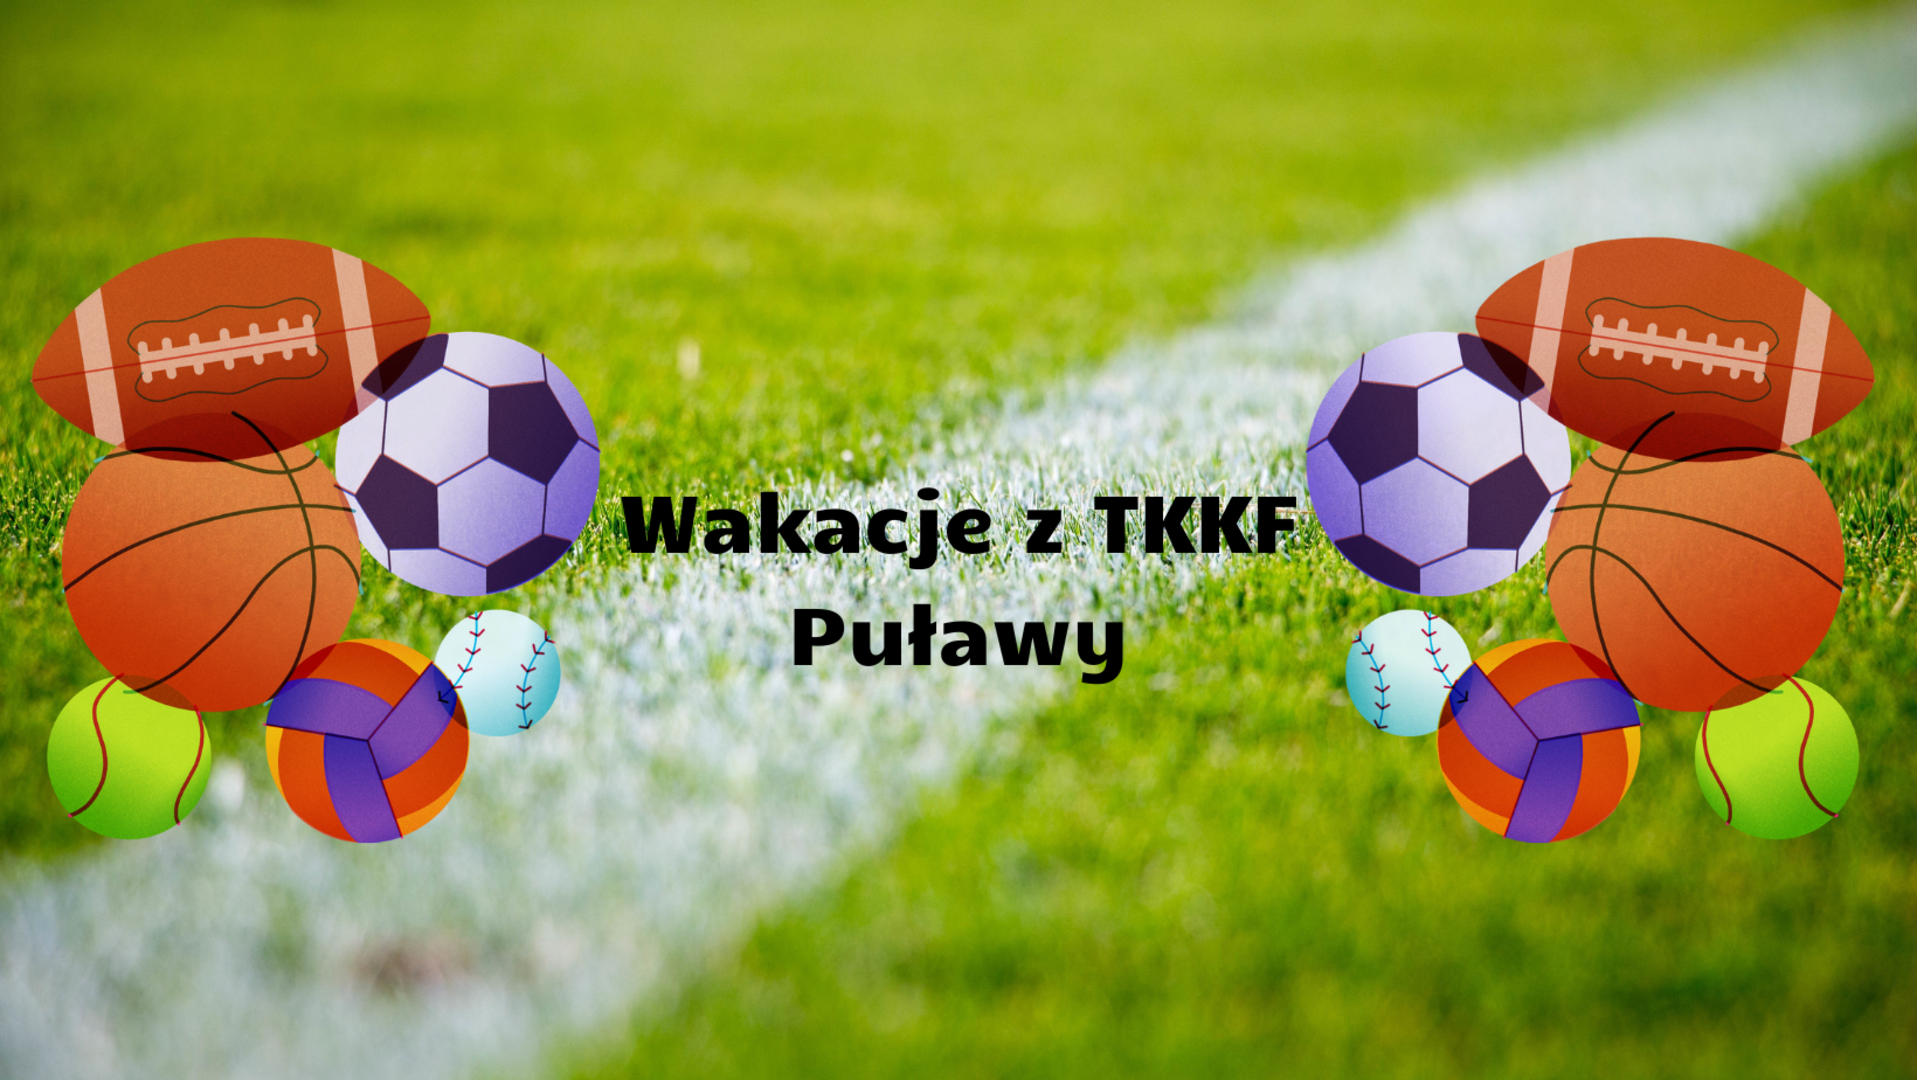 Wakacje z TKKF Puławy